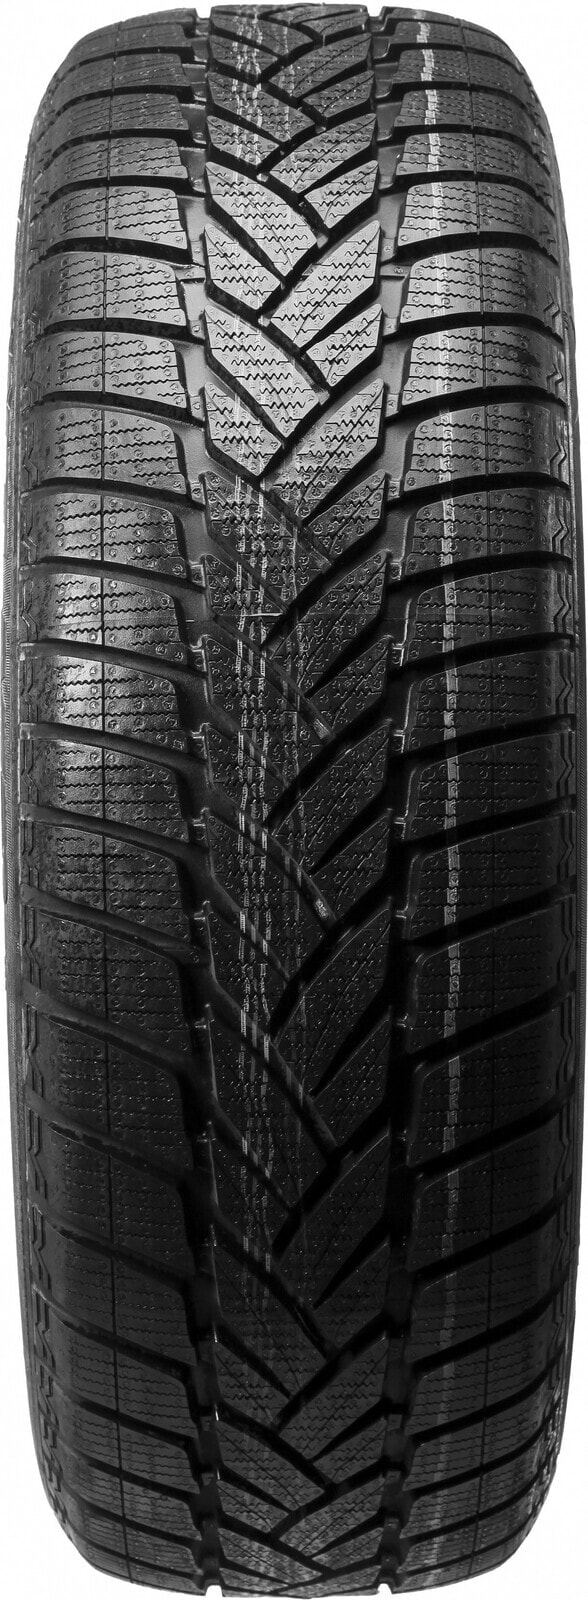 Шины для внедорожника зимние Dunlop Grandtrek WT M3 MO 3PMSF M+S 265/55 R19 109H